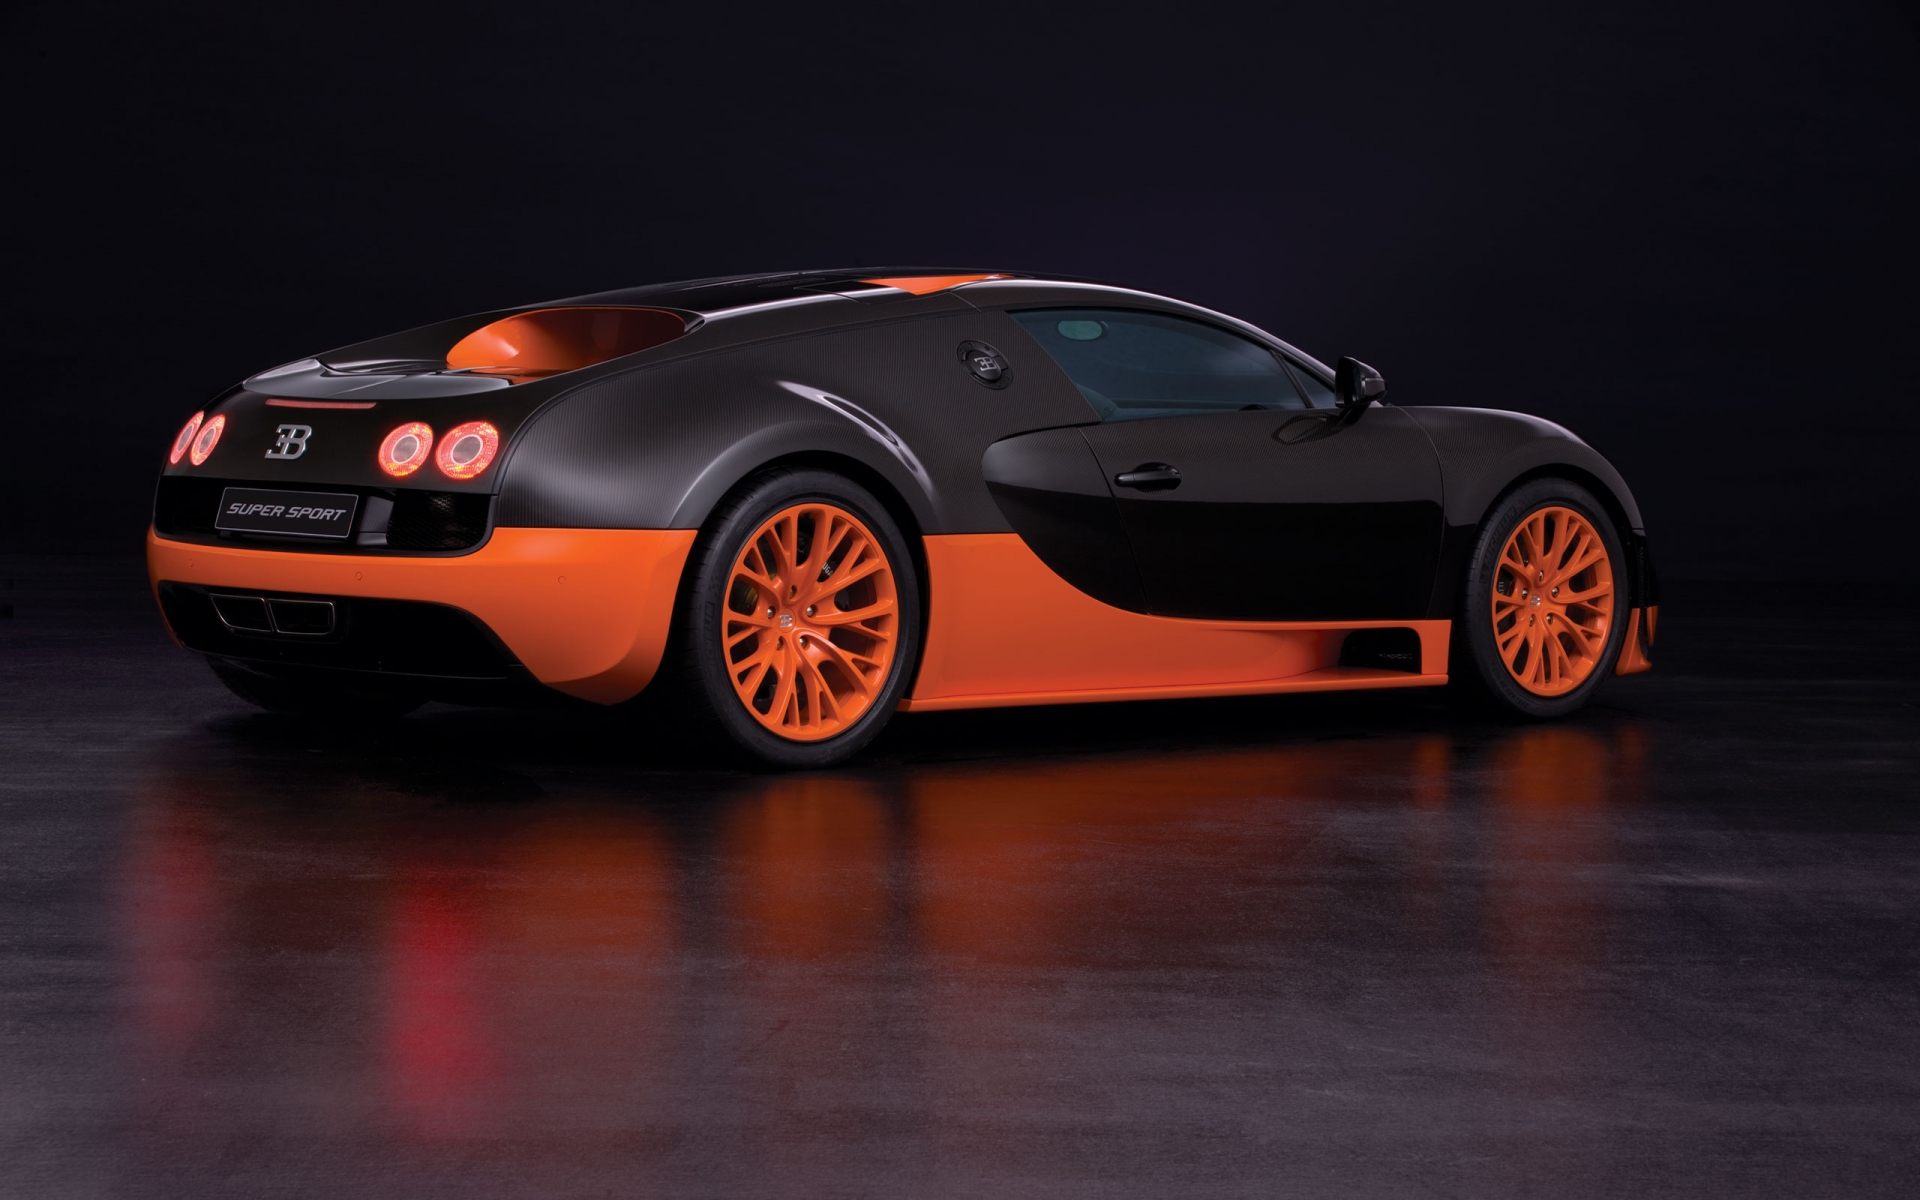 Orange Bugatti Veyron Super Sport for 1920 x 1200 widescreen resolution